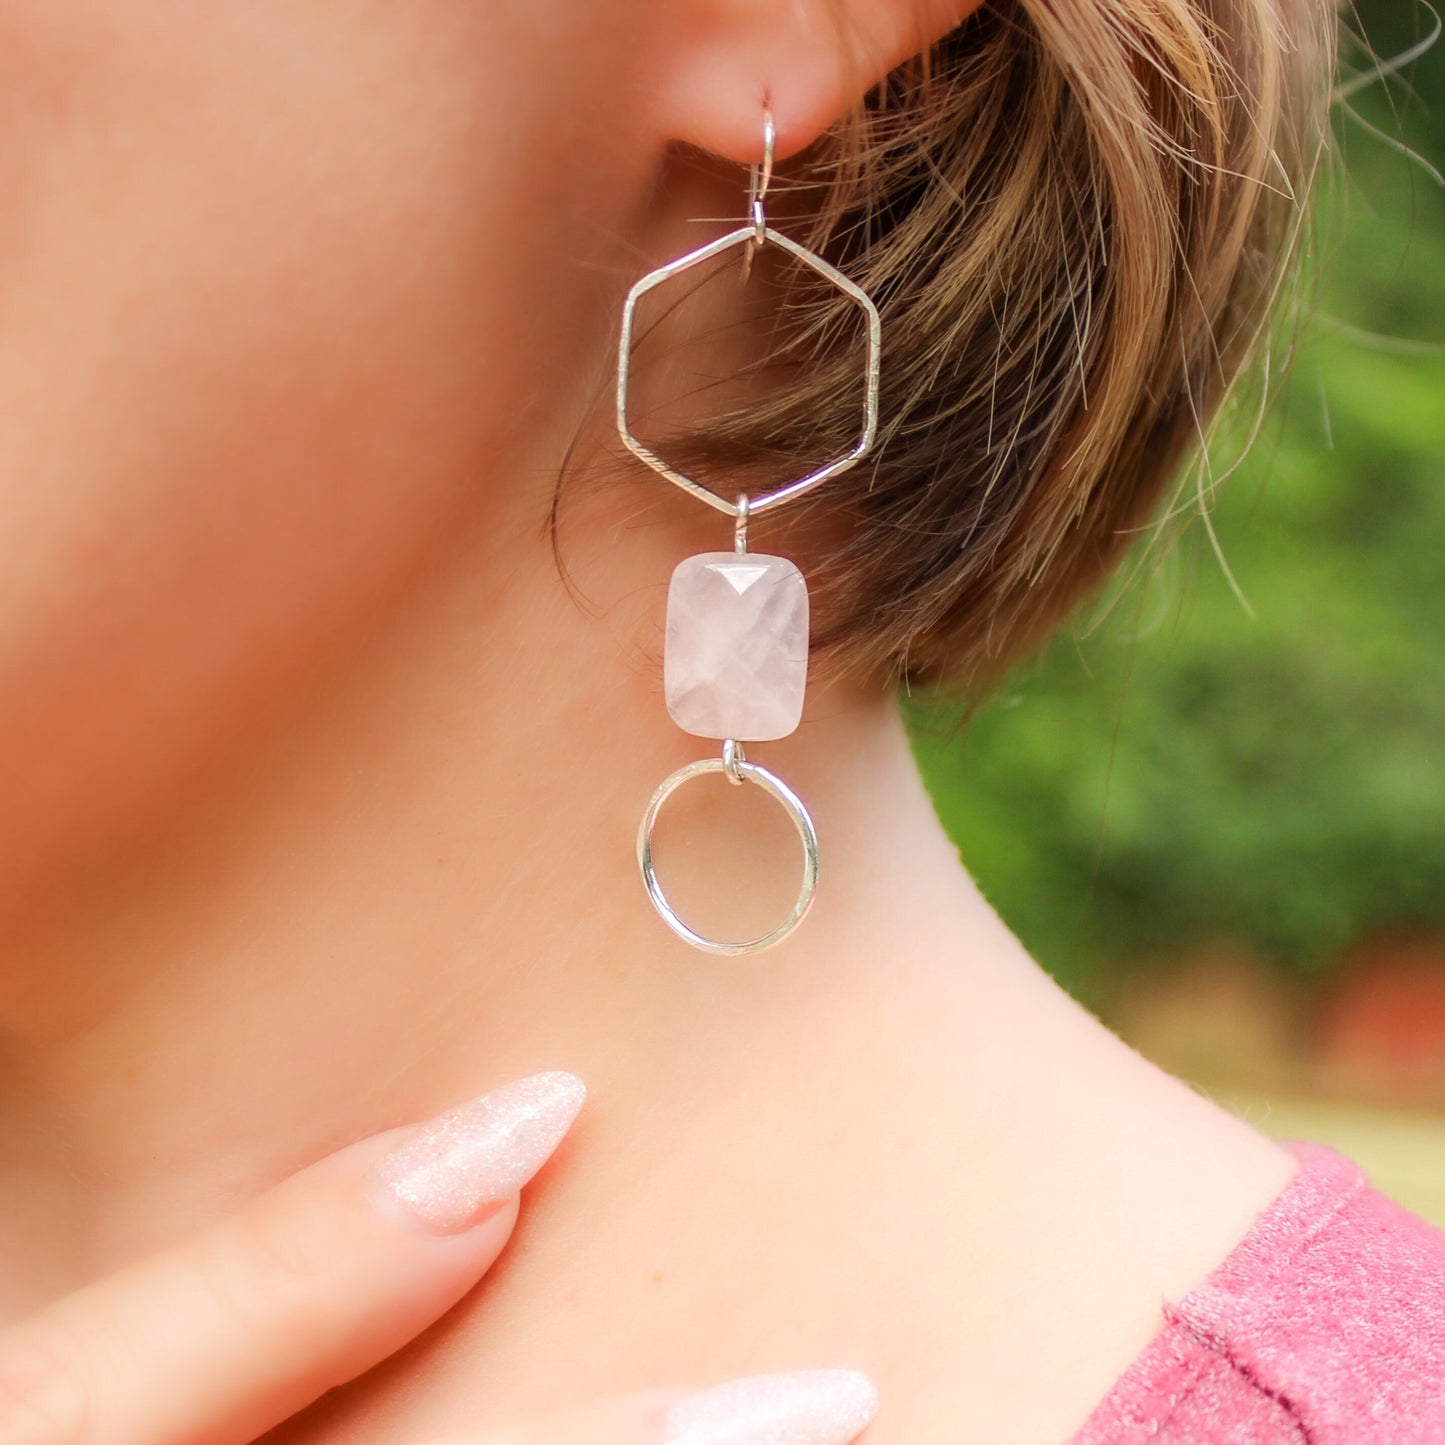 Sterling Silver Rose Quartz Statement Earrings // Long Geometric Minimalist Dangle Earrings Waterproof and Hypoallergenic